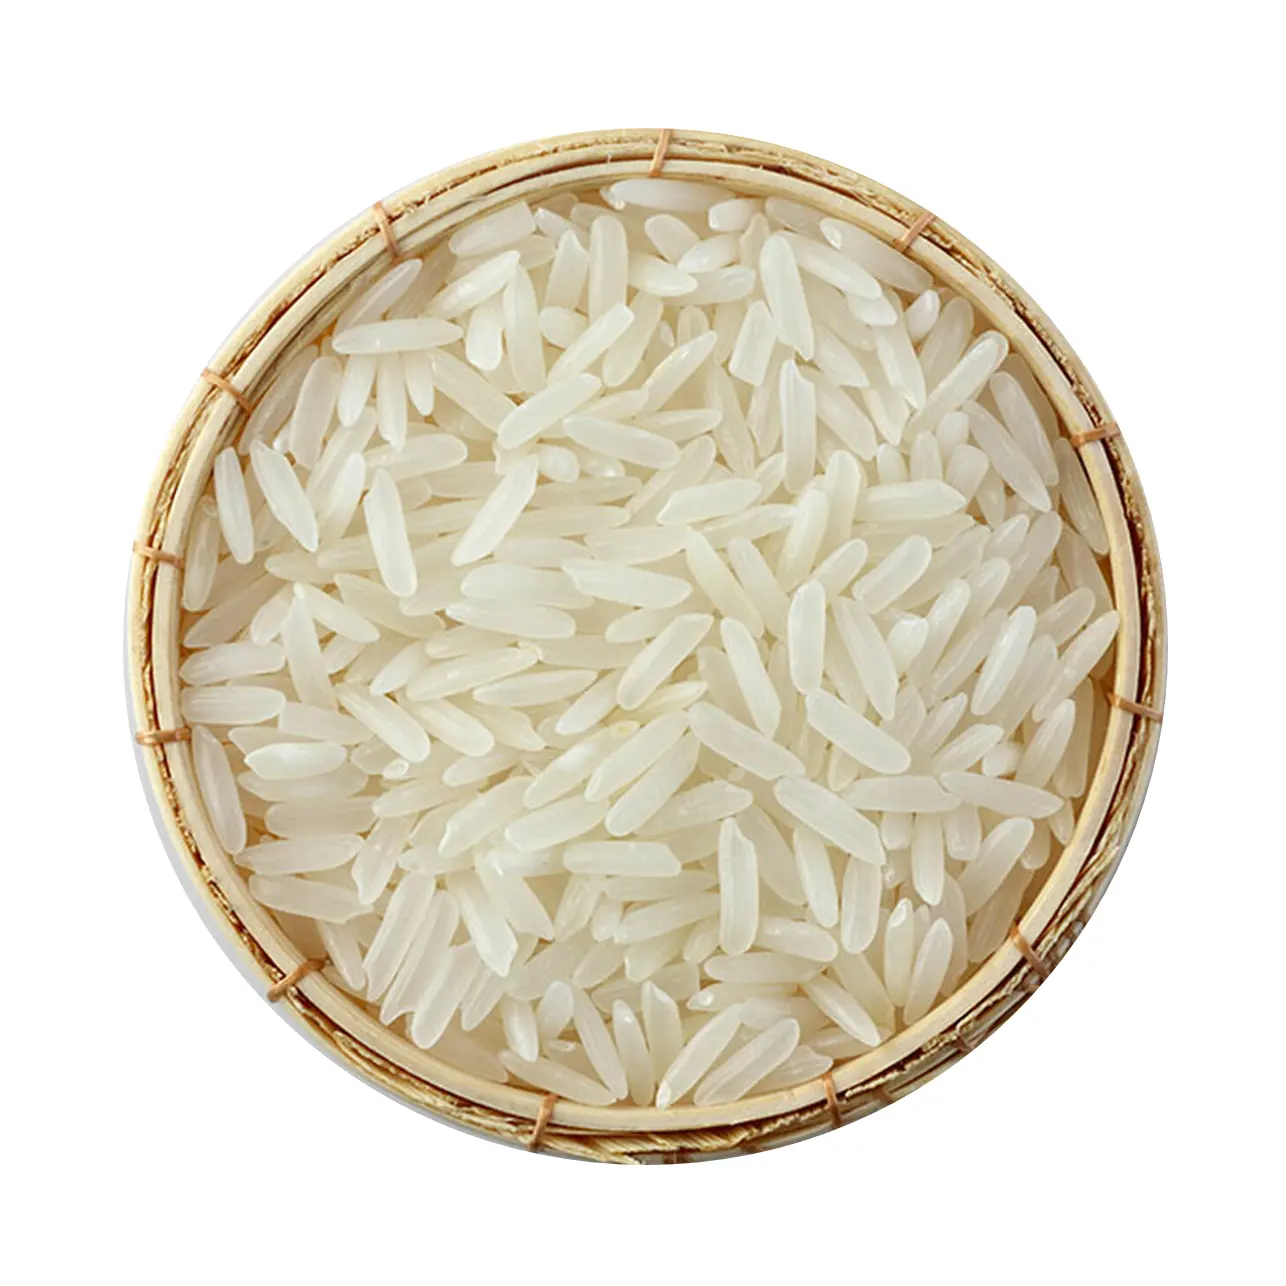 OEM فيتنام مصنع الدولية القياسية السعر المنخفض أرز ياسمين طويل الحبوب مع مخصصة التعبئة والتغليف